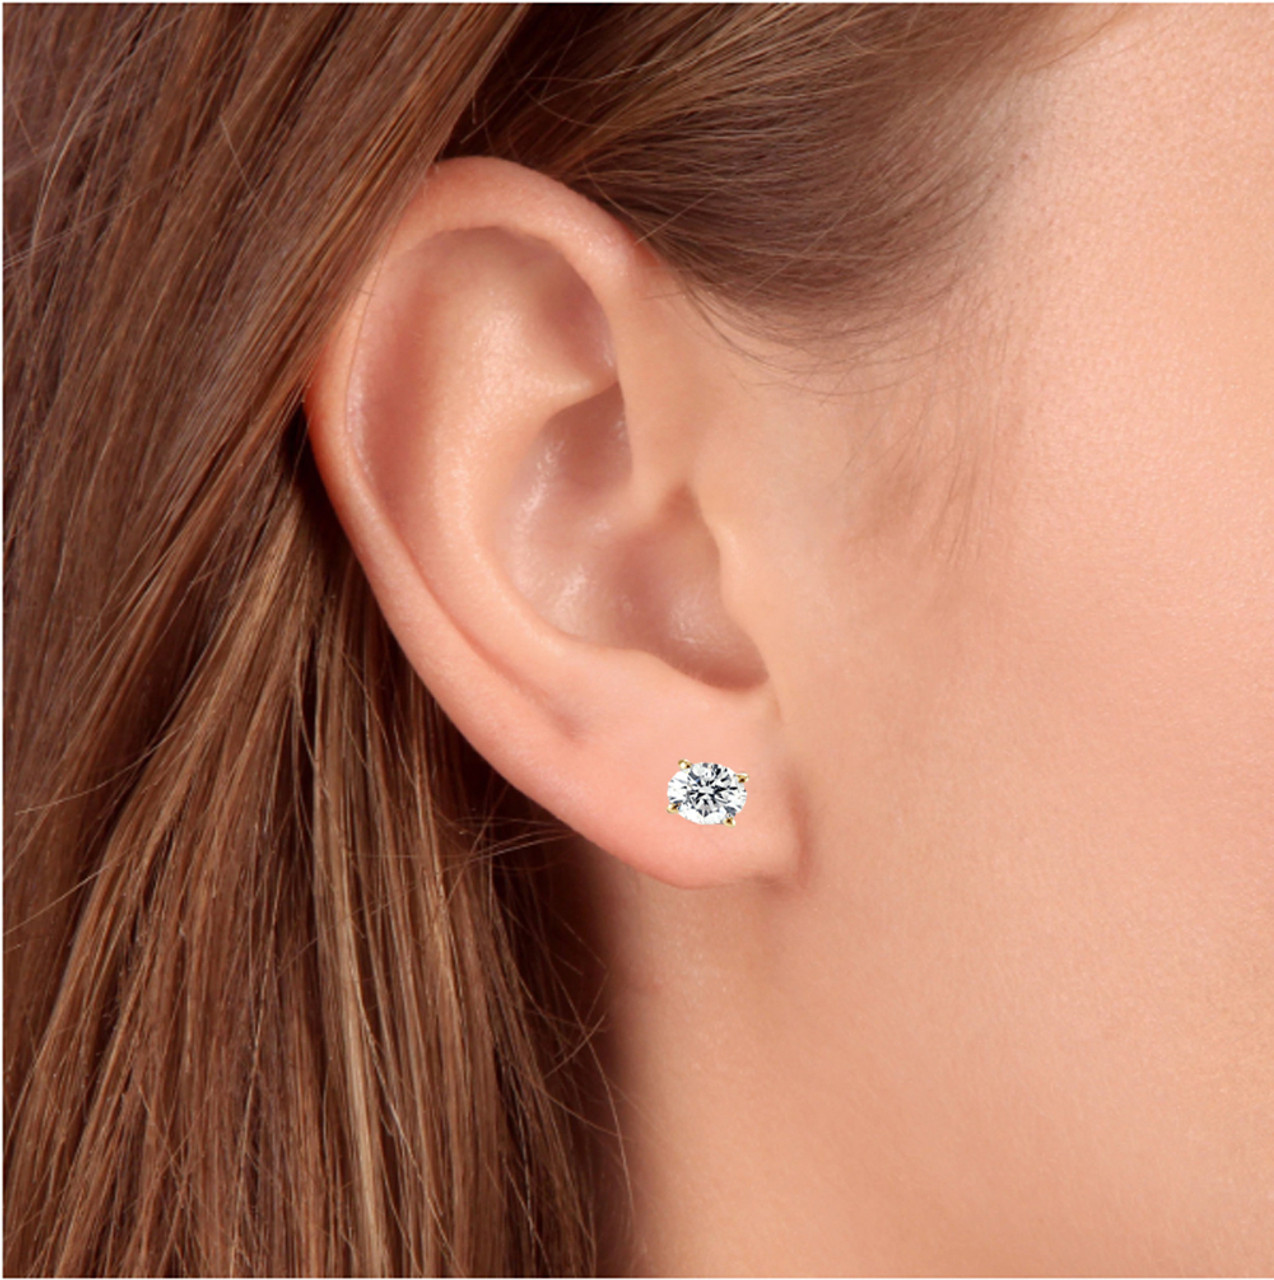 50 ct. t.w. Diamond Stud Earrings in 14kt White Gold